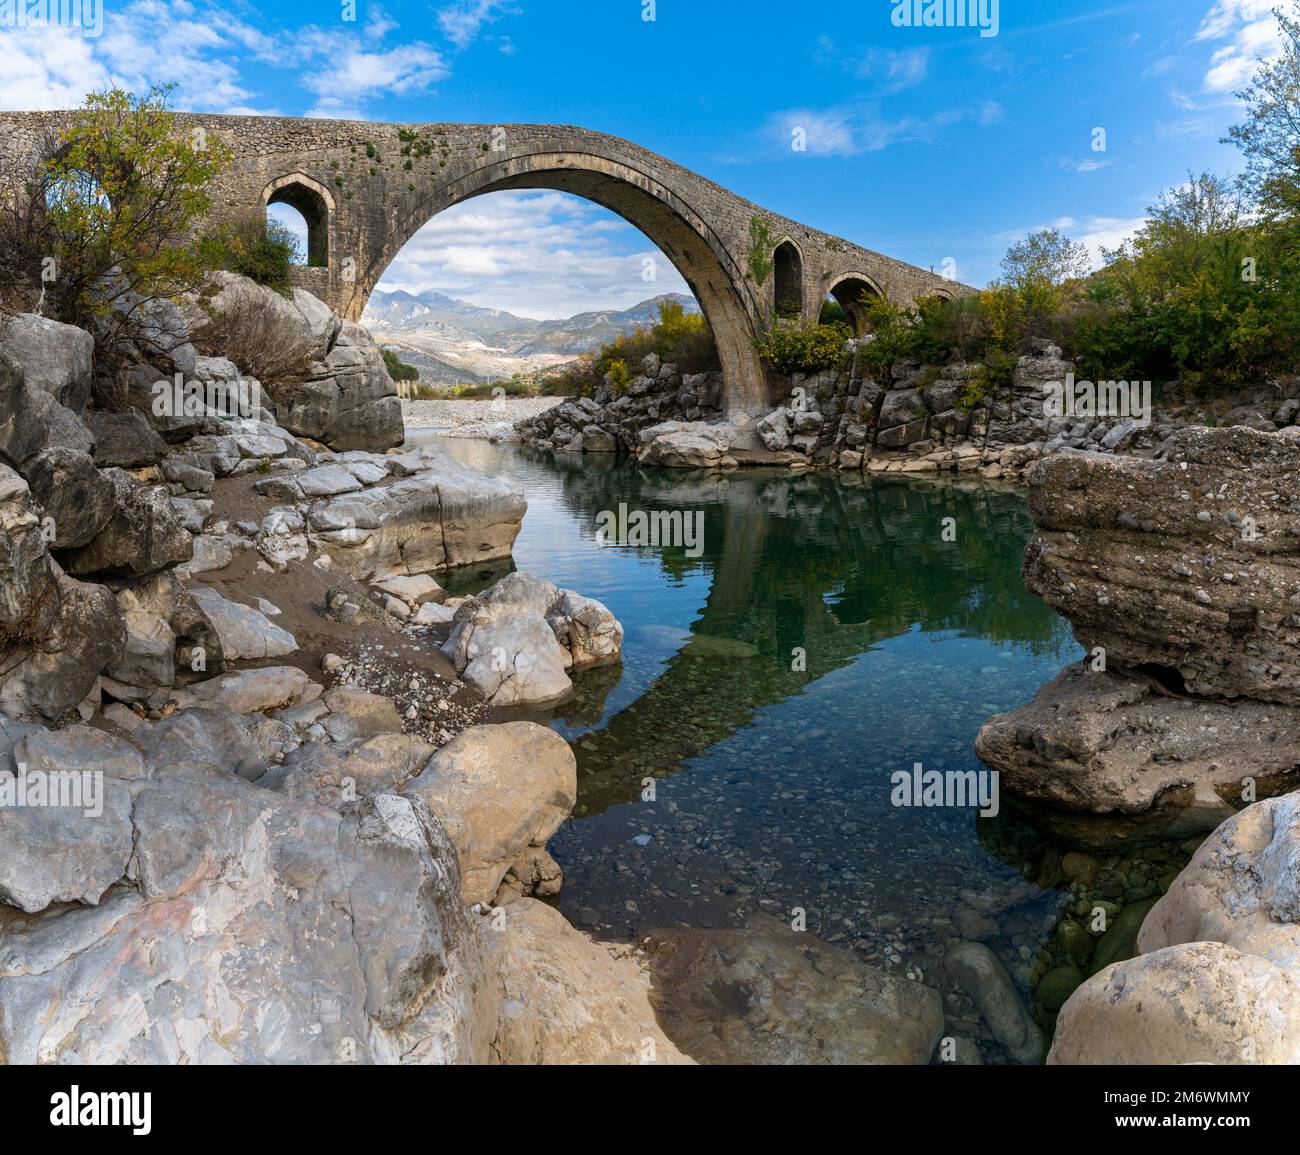 A view of the Ottoman Mesi Bridge near Shkoder in northwestern Albania Stock Photo